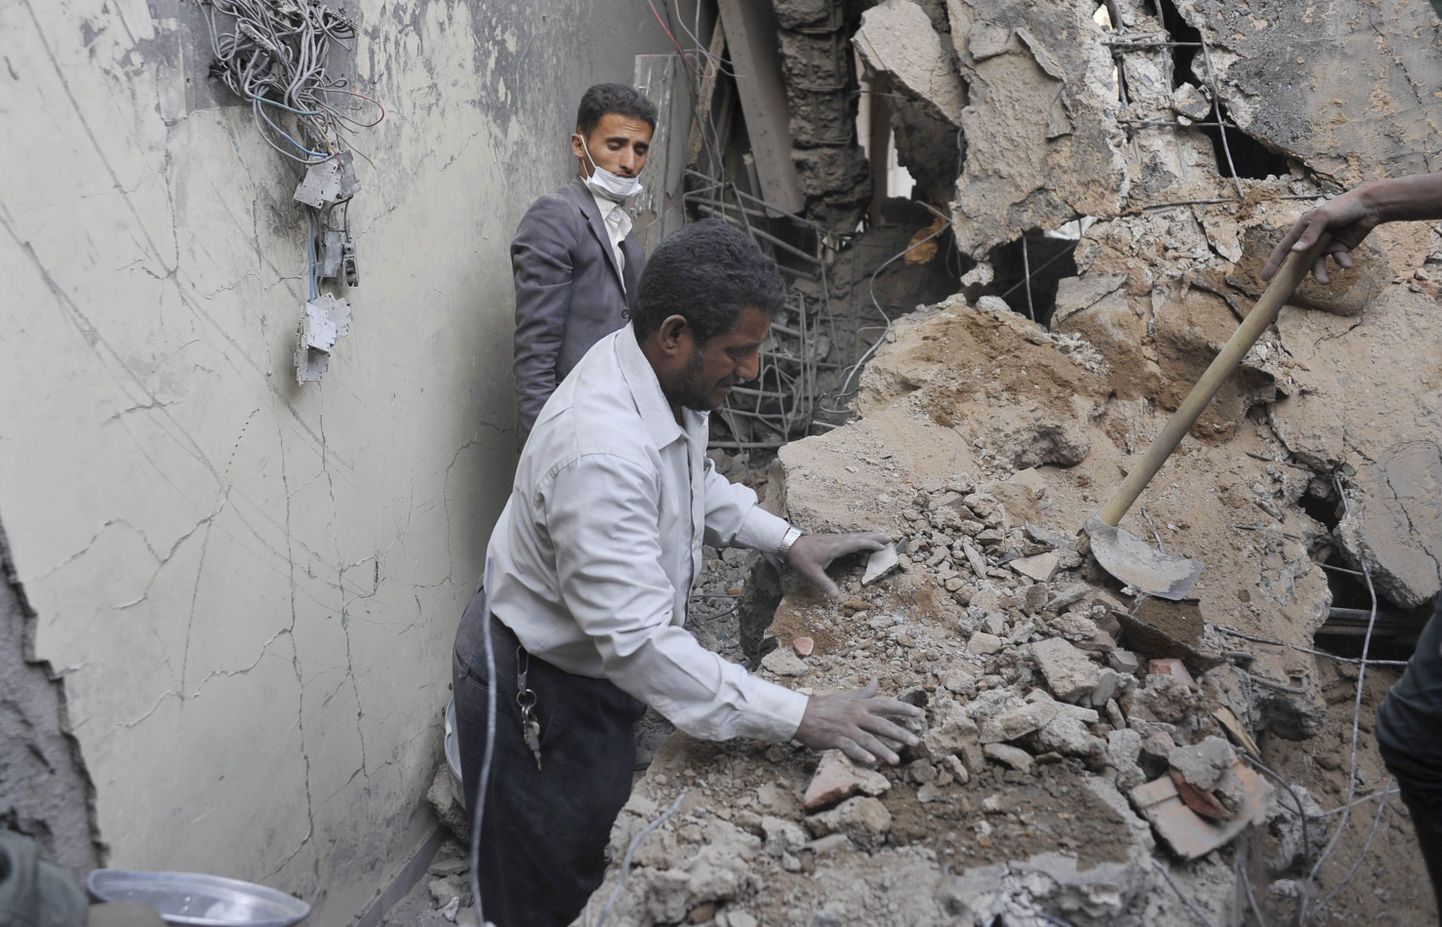 Jeemenlased õhurünnakus kannatada saanud majas